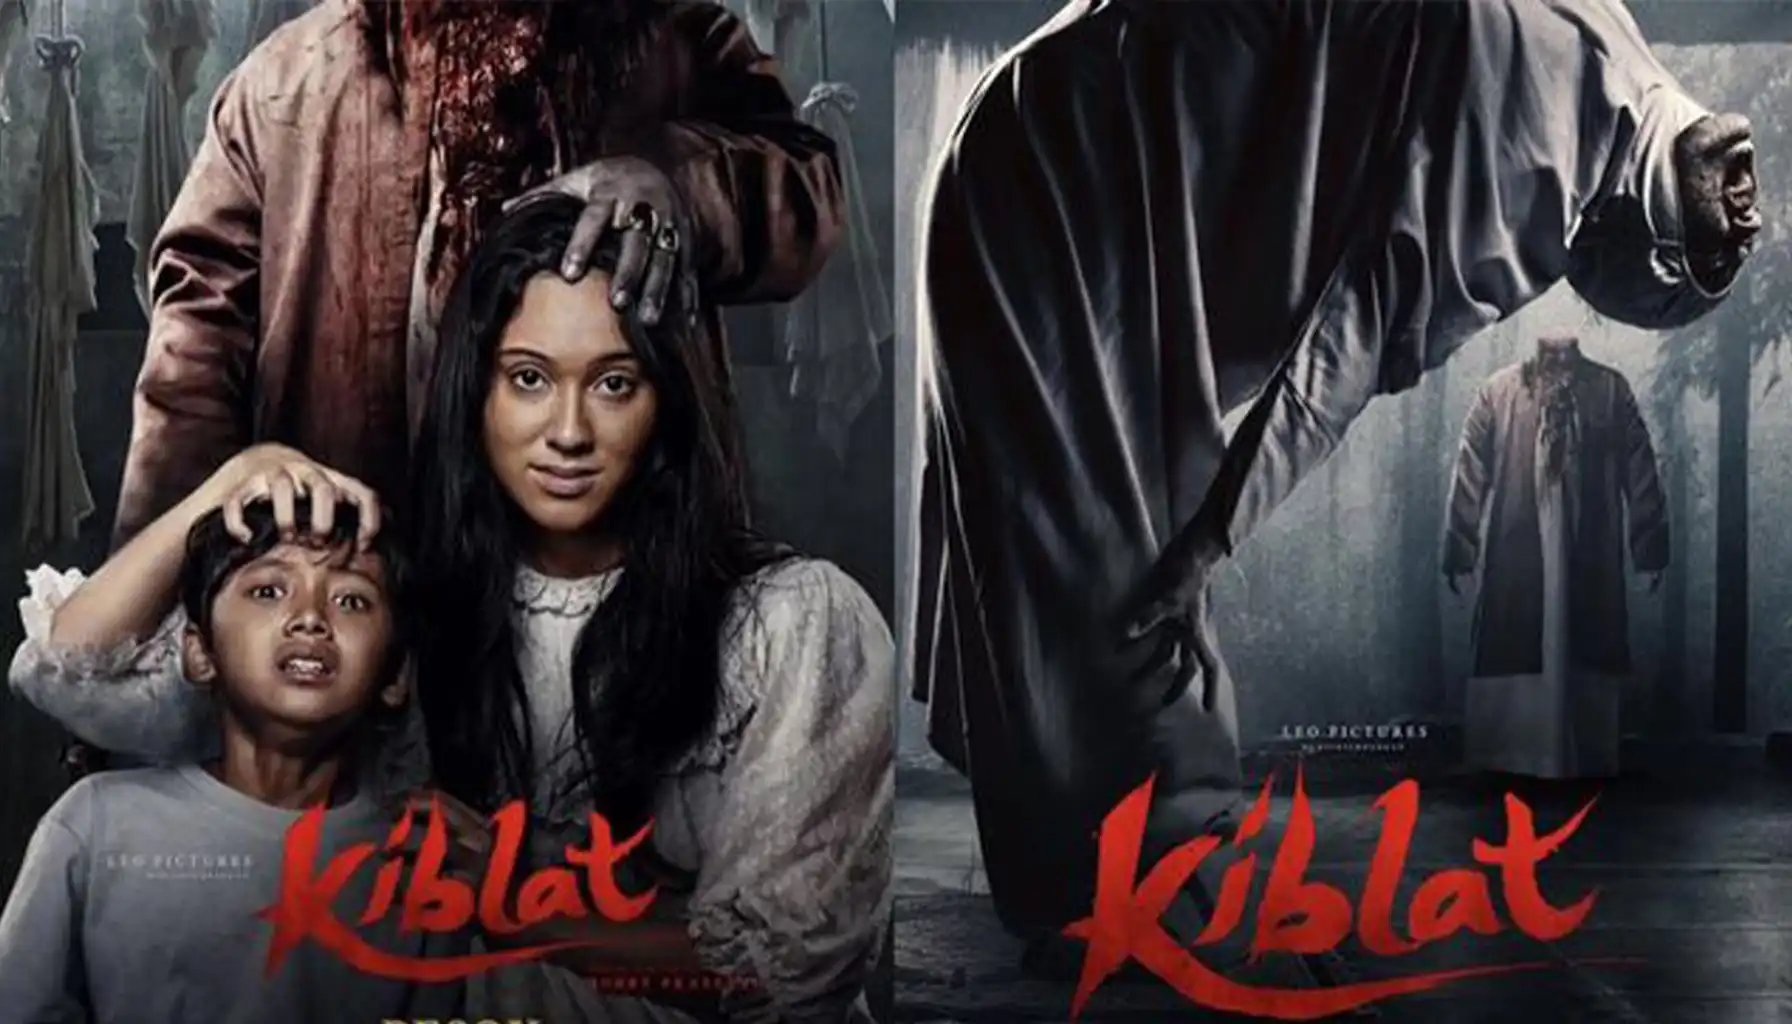 Leo Pictures dan MUI berkolaborasi mengatasi kontroversi film 'Kiblat', mengubah judul dan poster demi harmoni sosial.